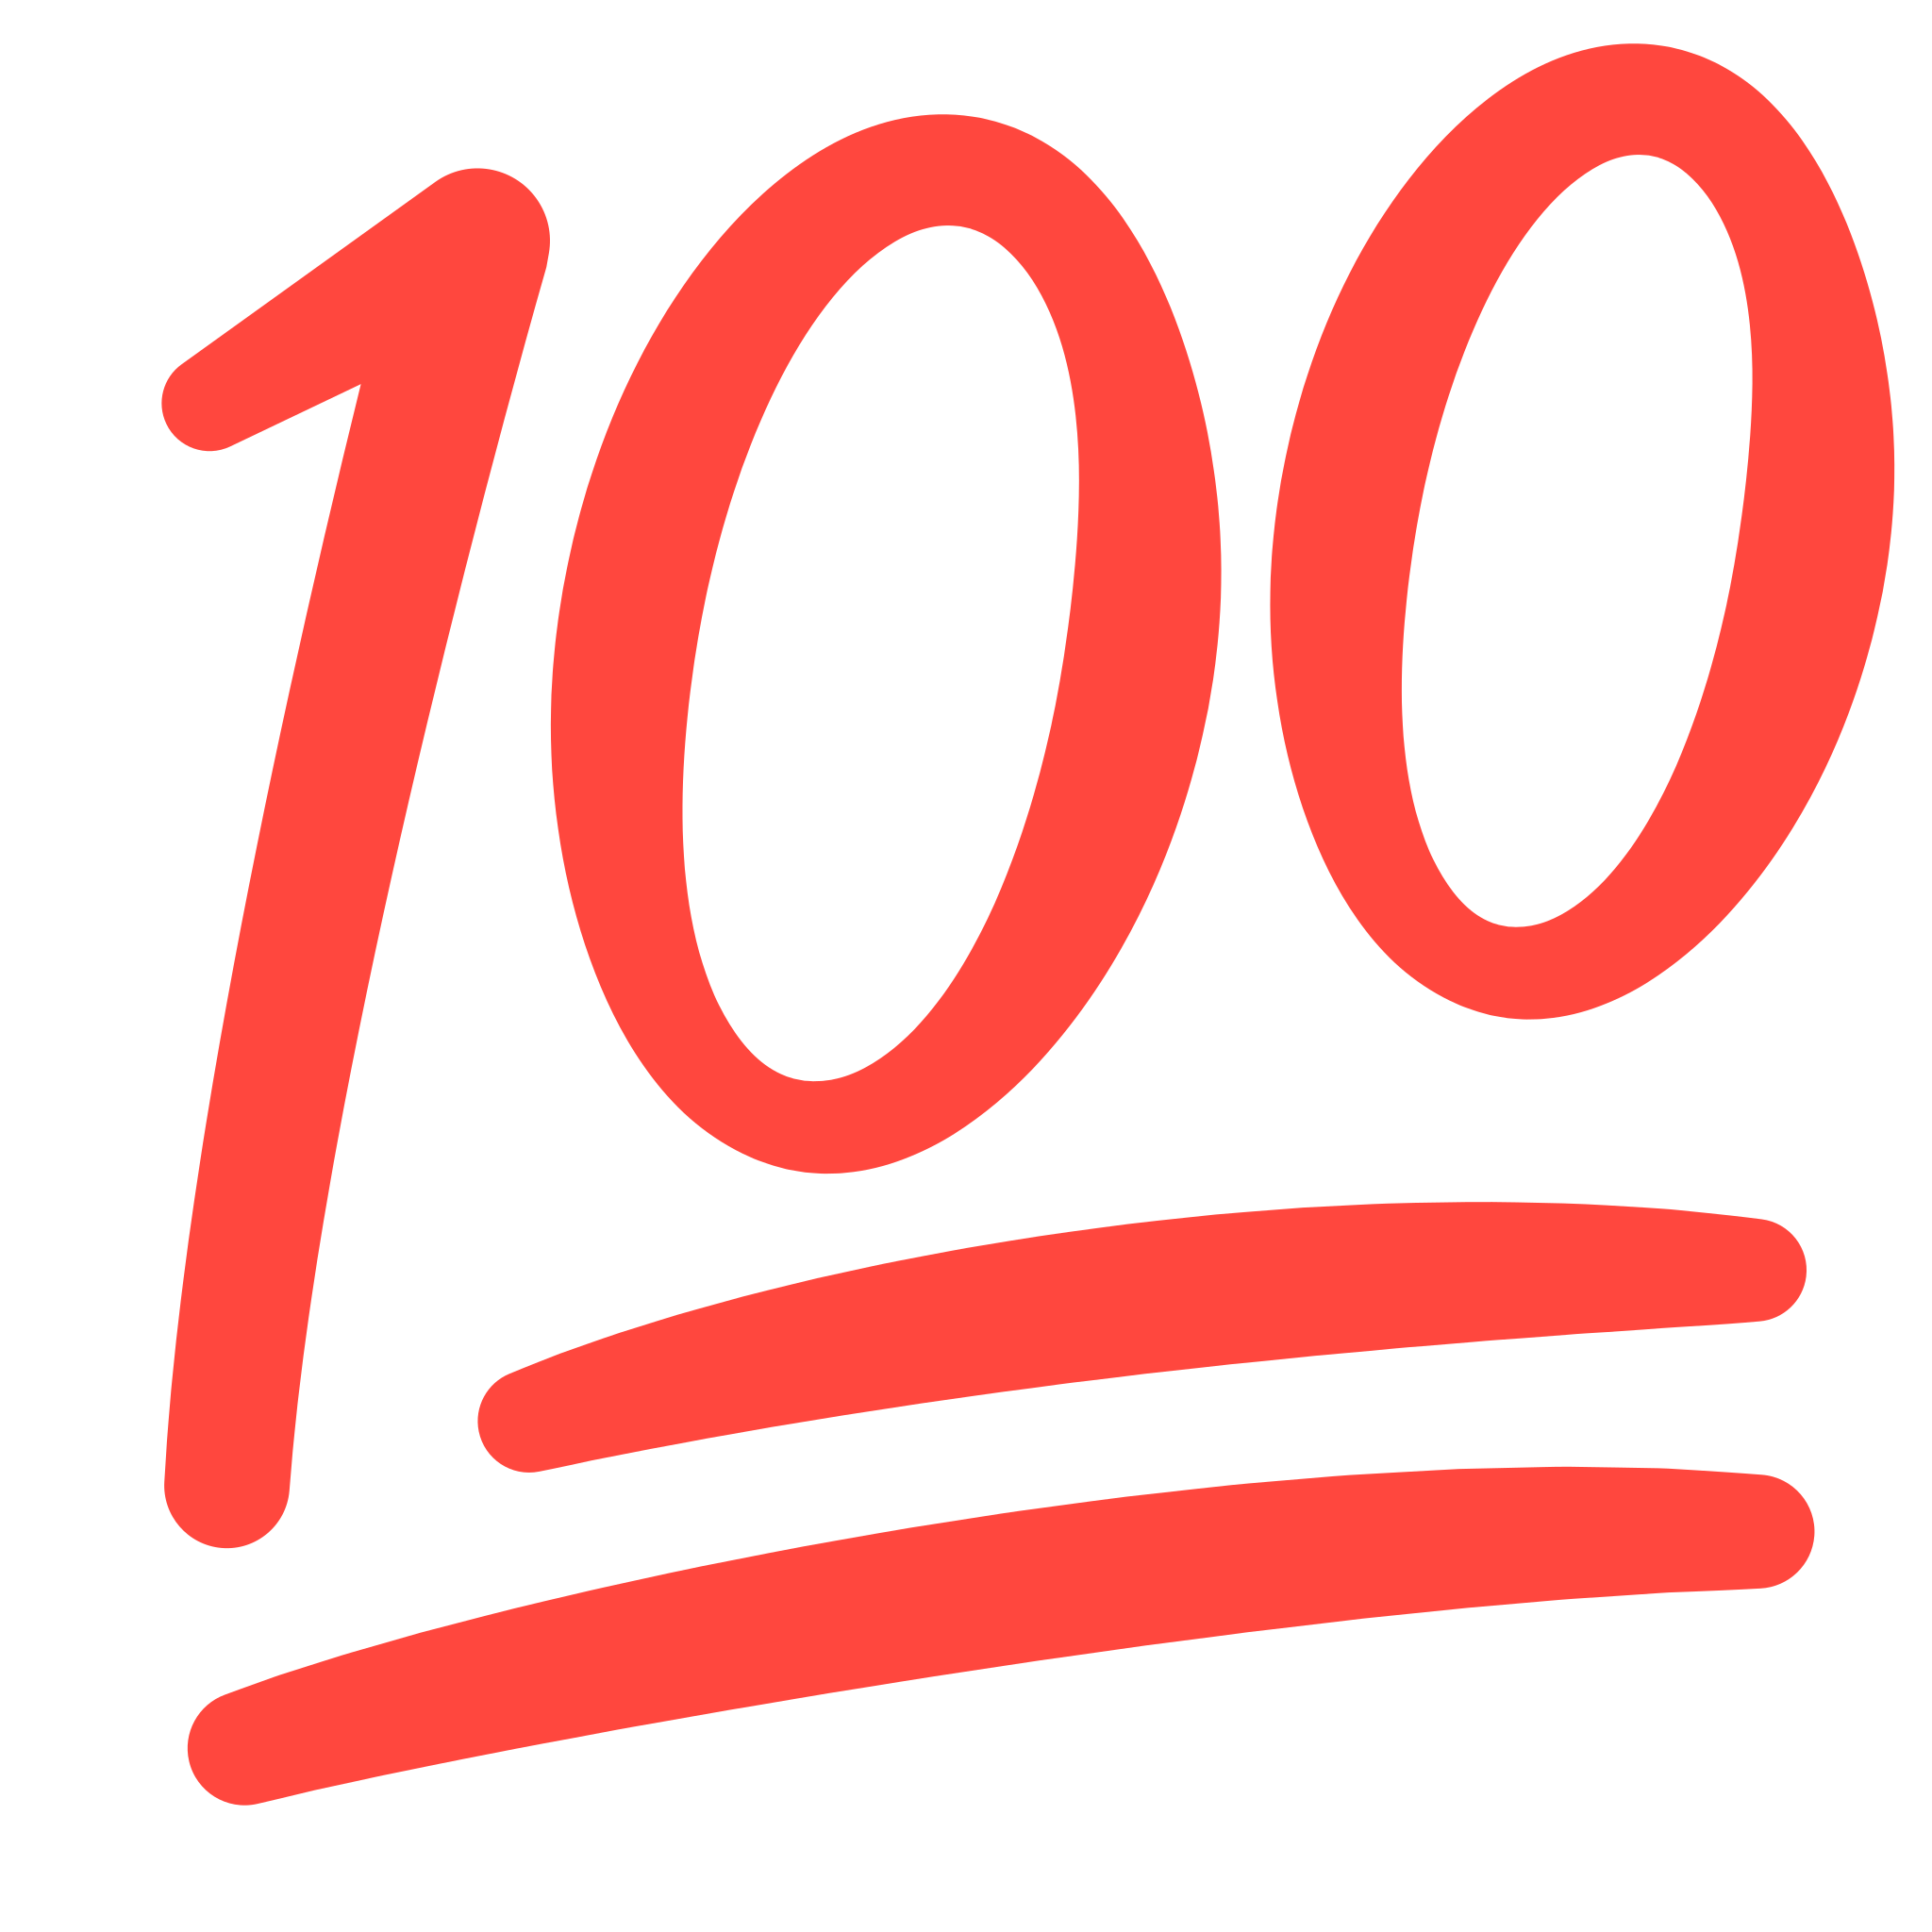 Emoji 100